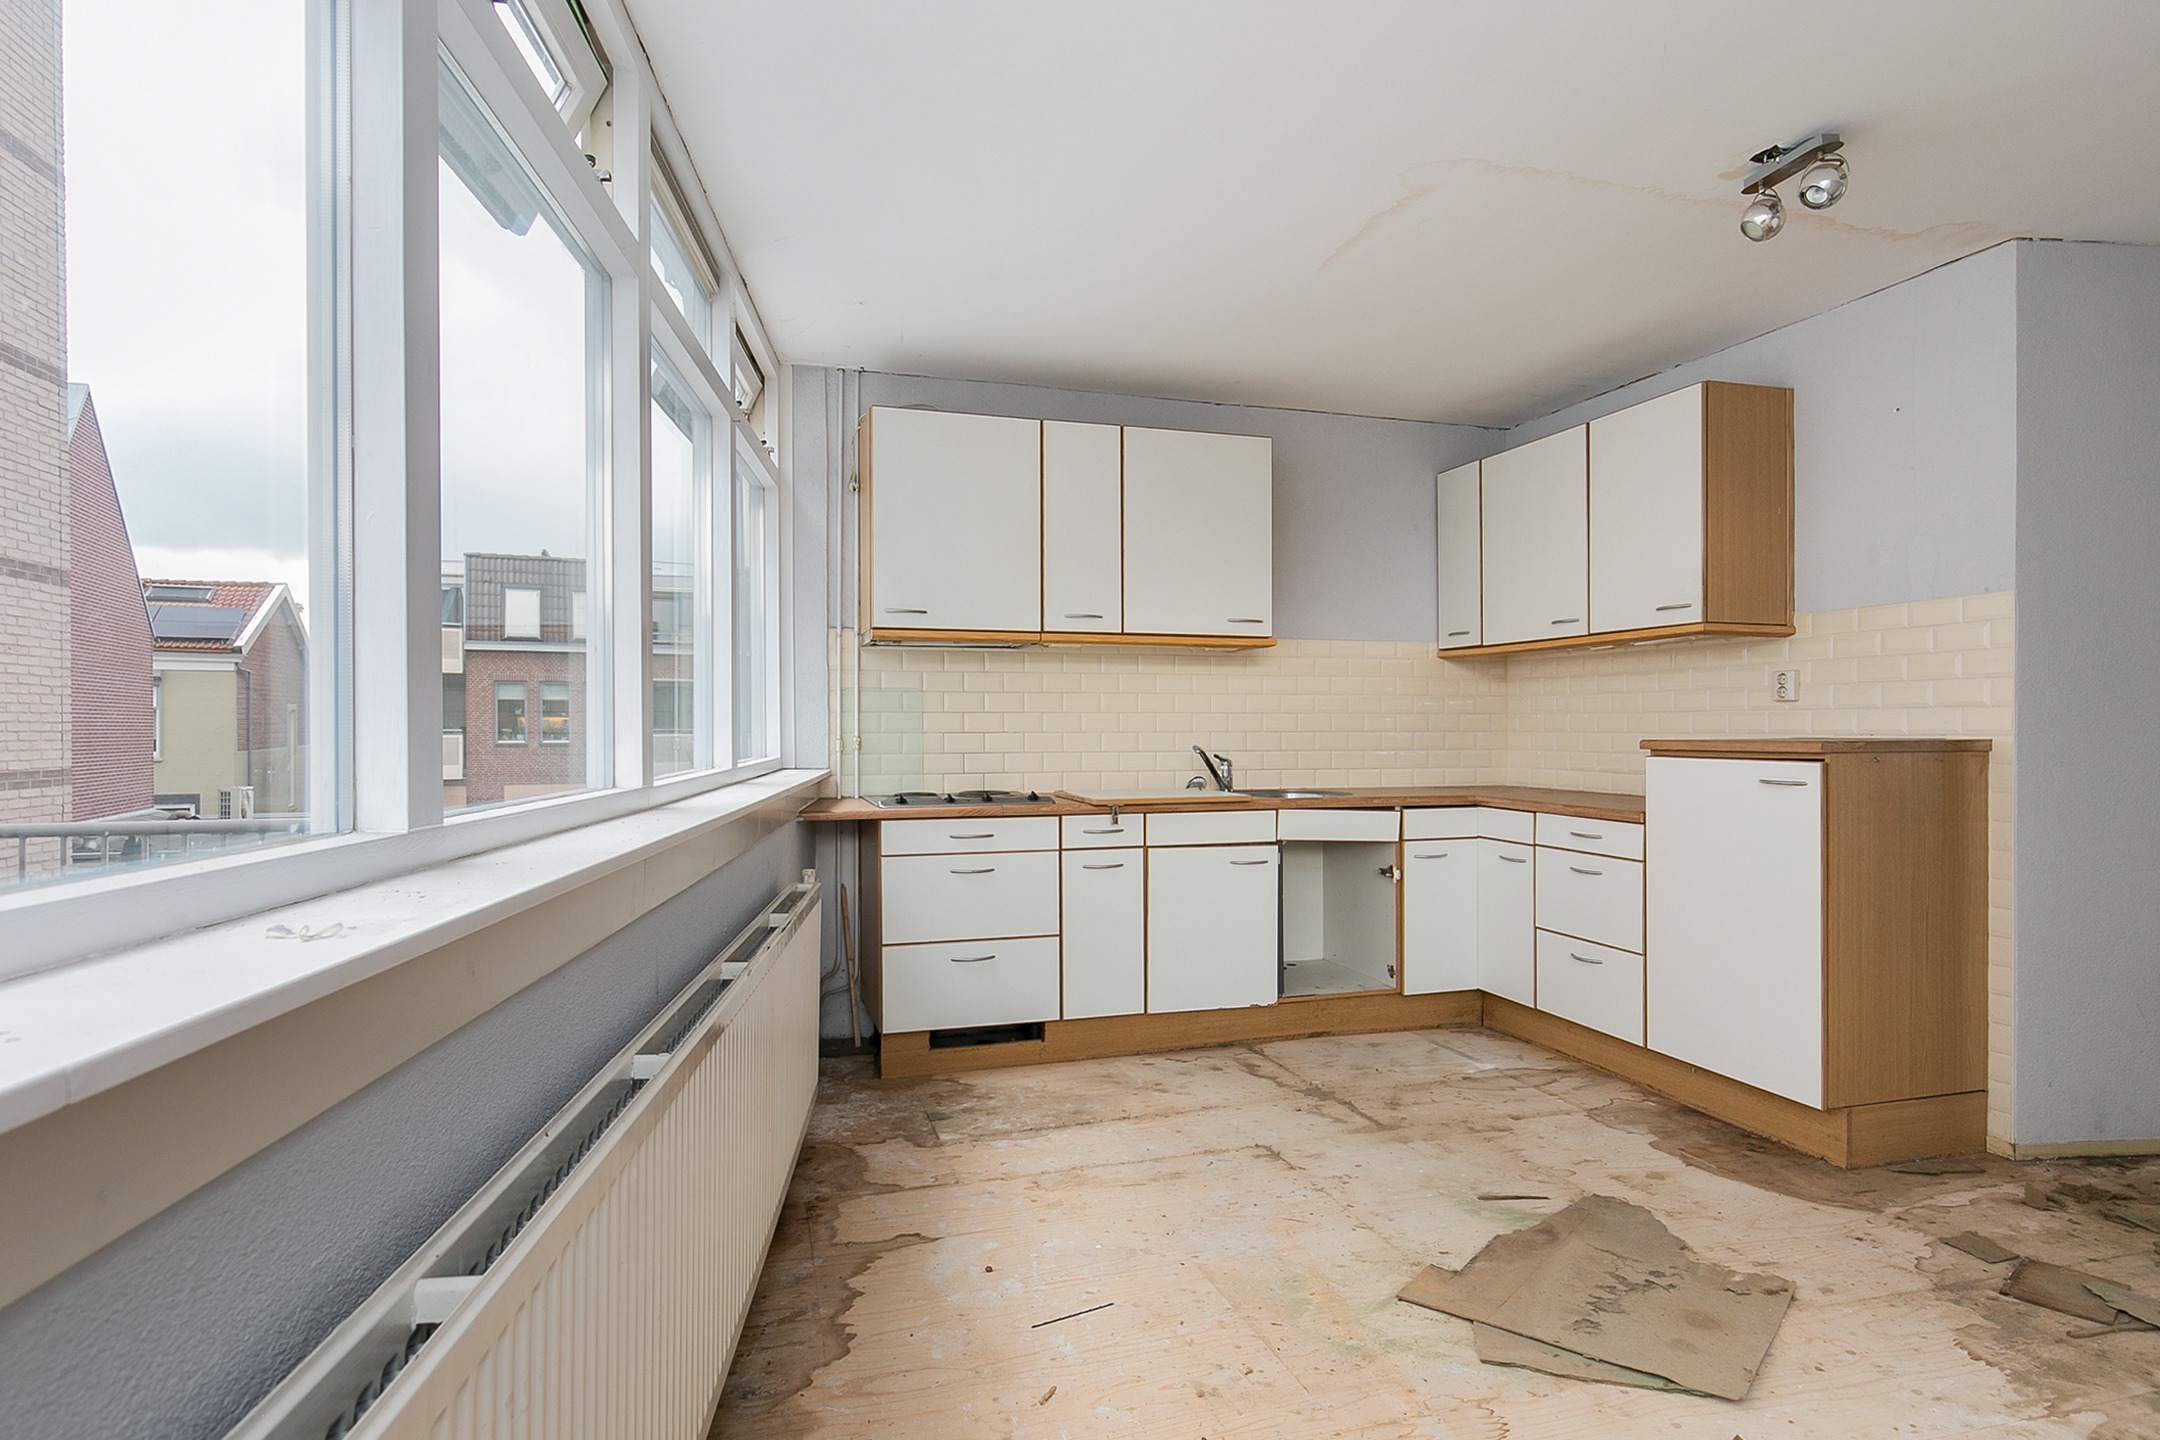 Woning / appartement - Leerdam - Nieuwstraat 2